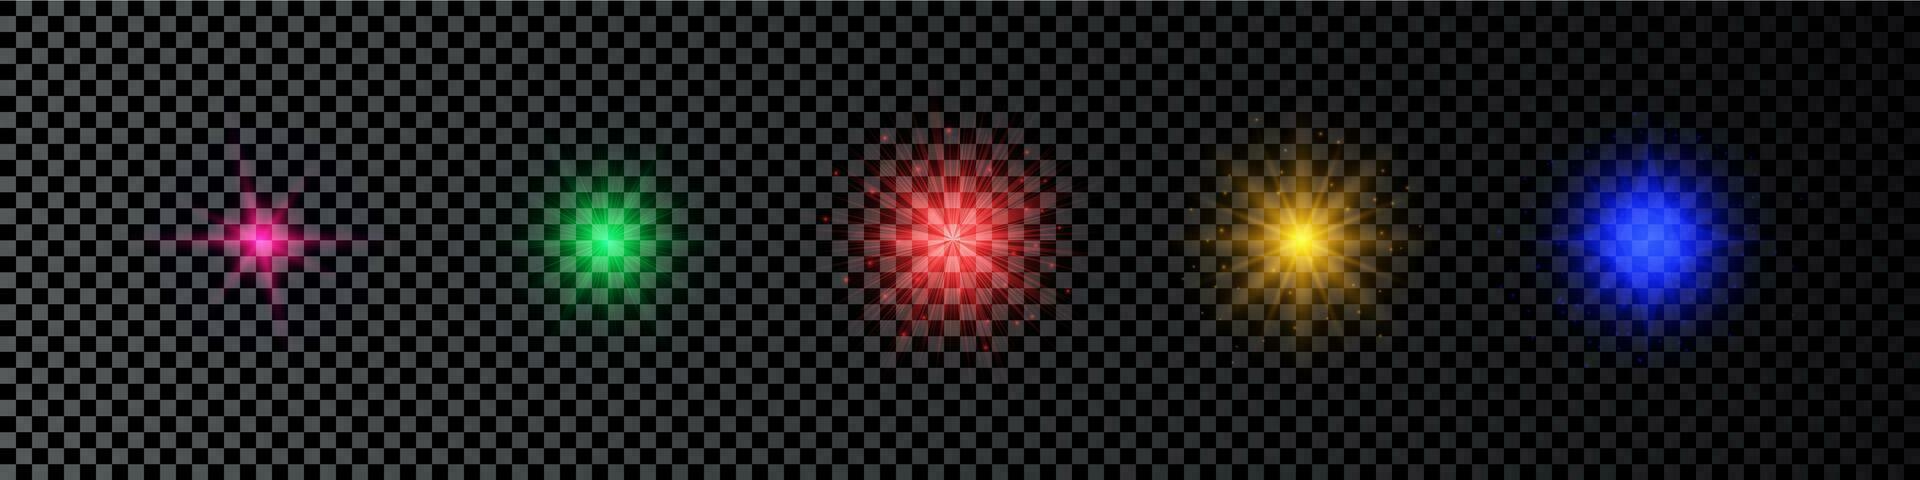 ljus effekt av lins bloss. uppsättning av fem Flerfärgad lysande lampor starburst effekter med pärlar på en mörk transparent bakgrund. vektor illustration